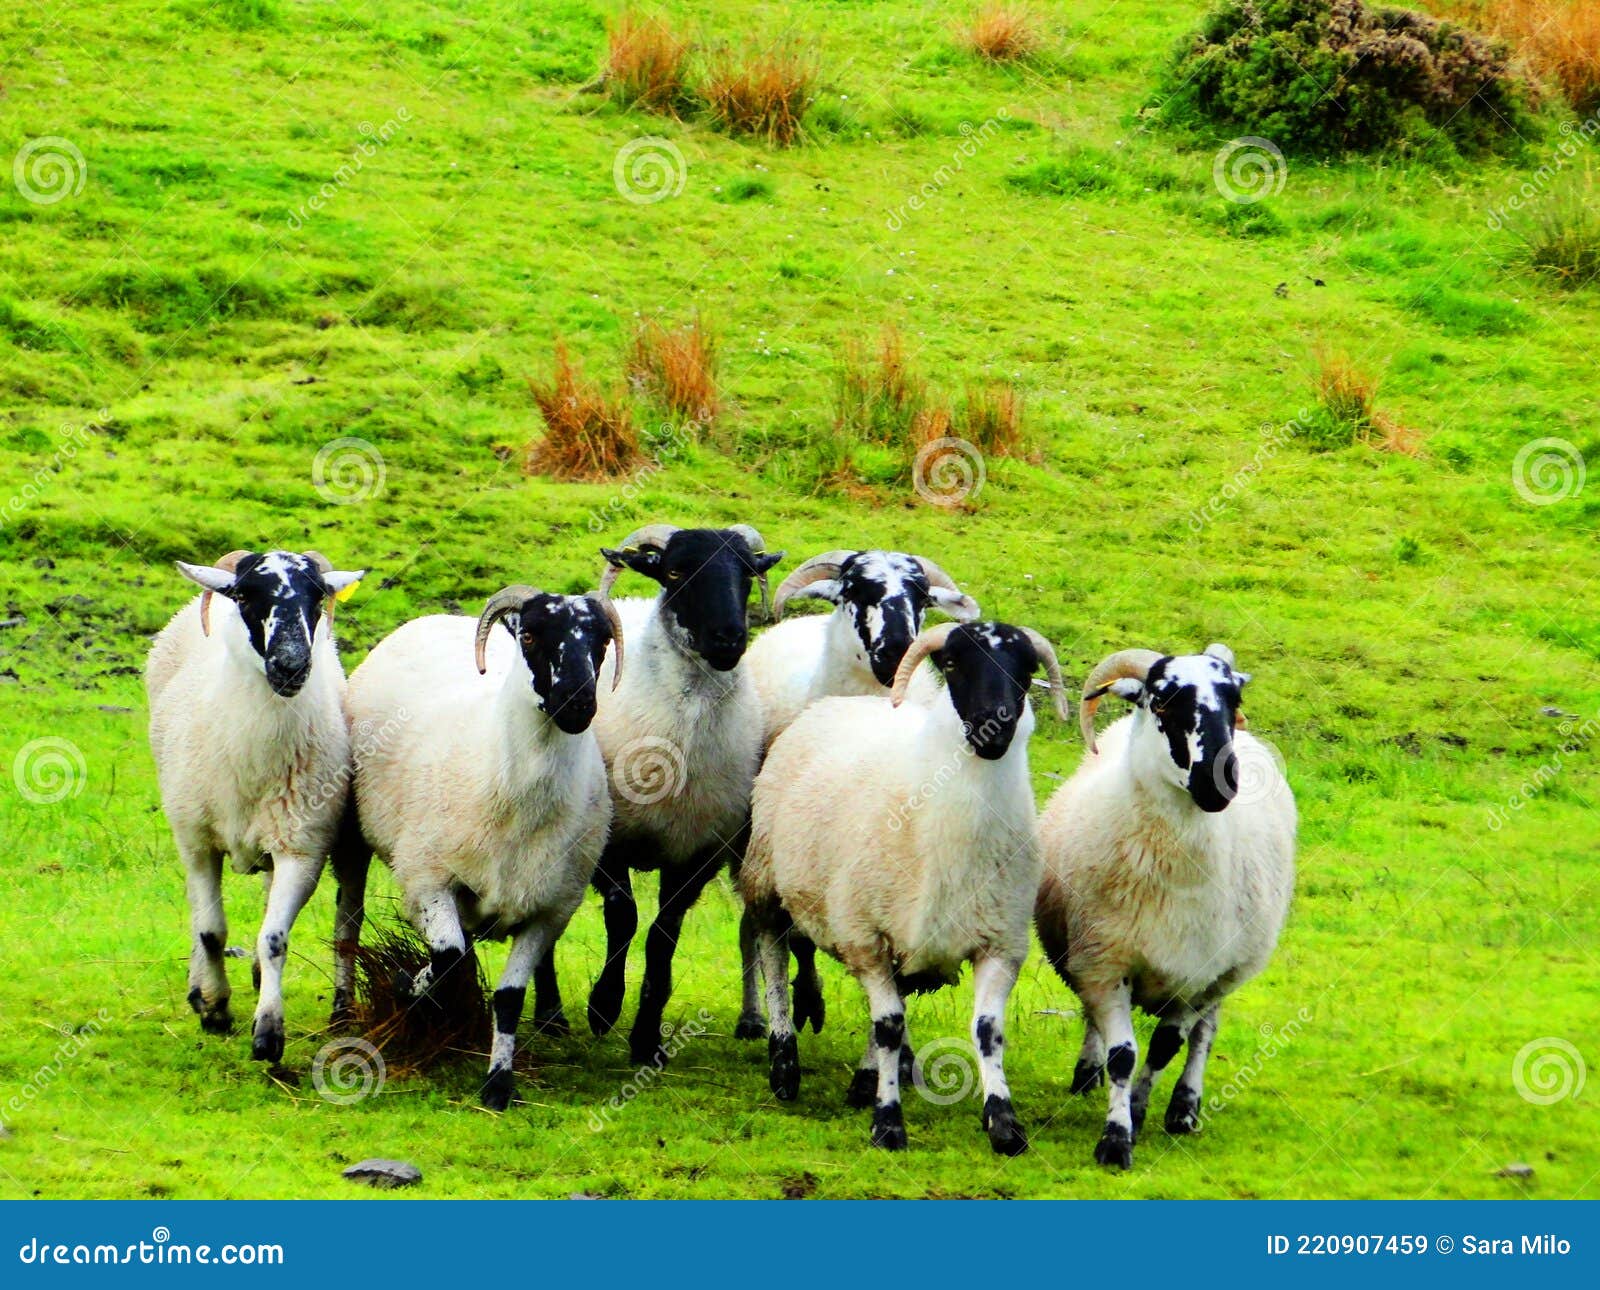 ireland, irish sheep-irlanda allevamento pecore irlandesi